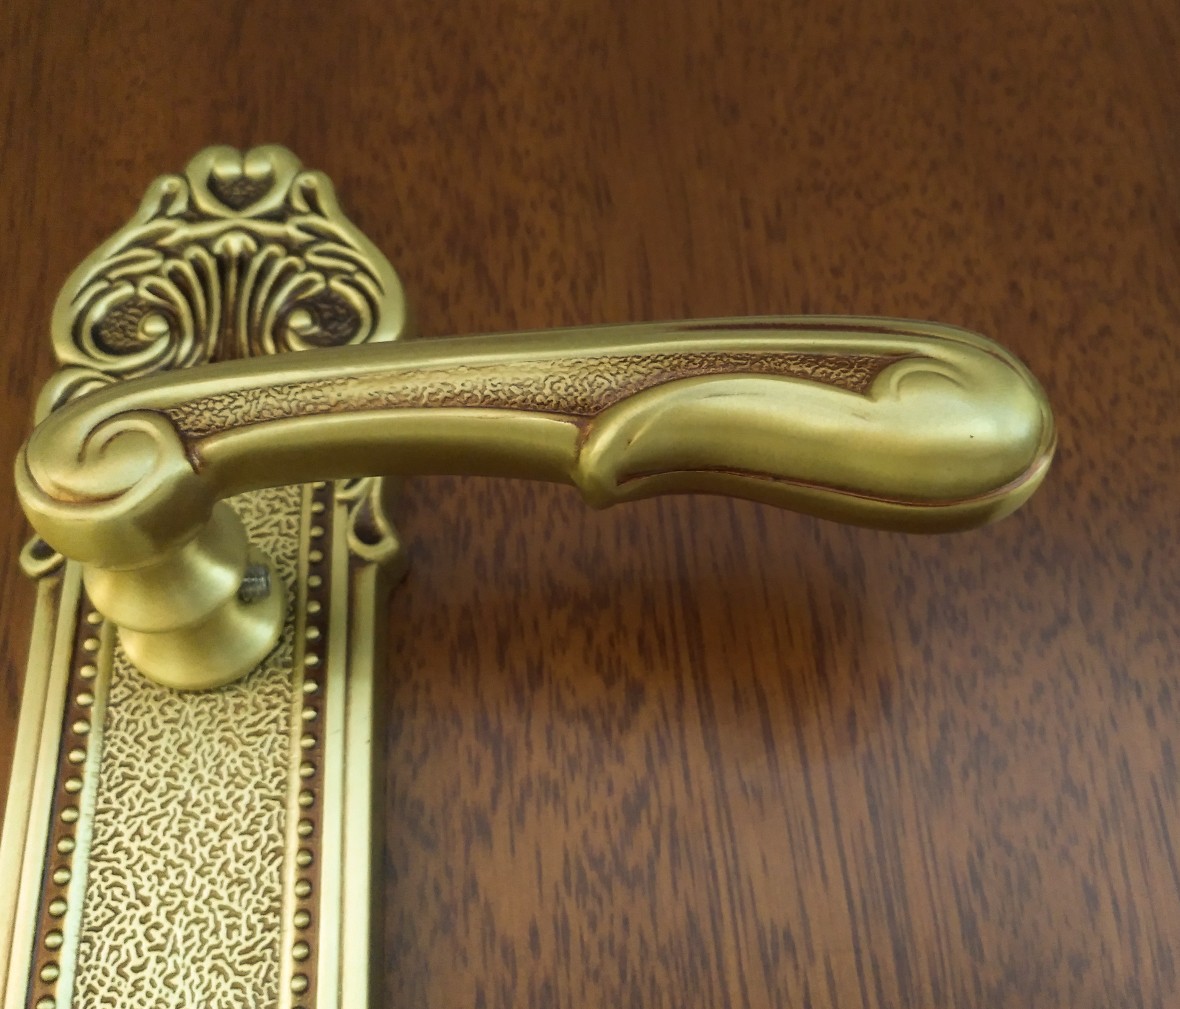 晾霸五金 米开朗801-19欧洲金型号门锁 铜材质 优质门锁 情景细节